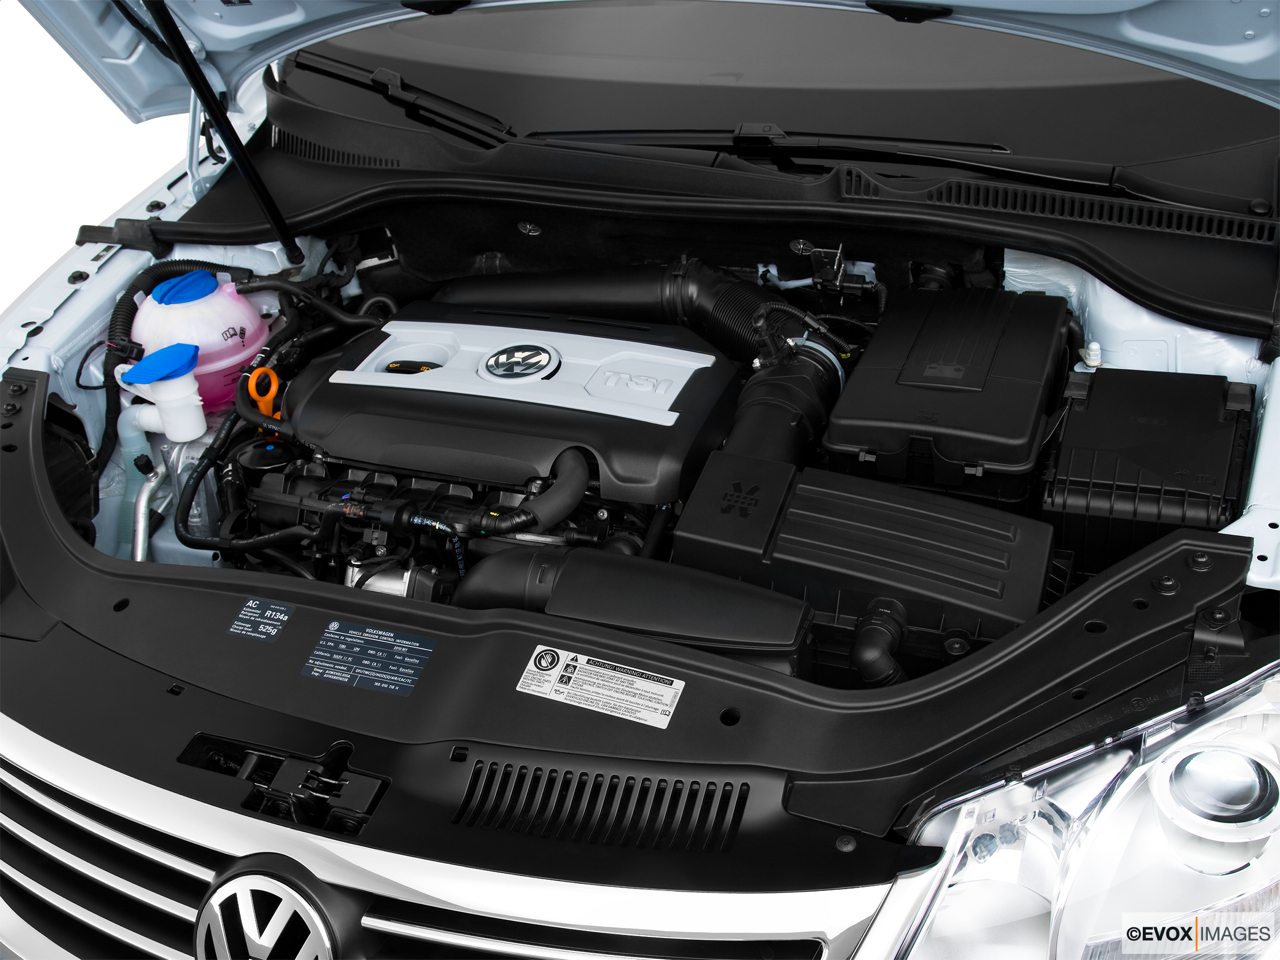 2010 Volkswagen Eos Lux Engine. 